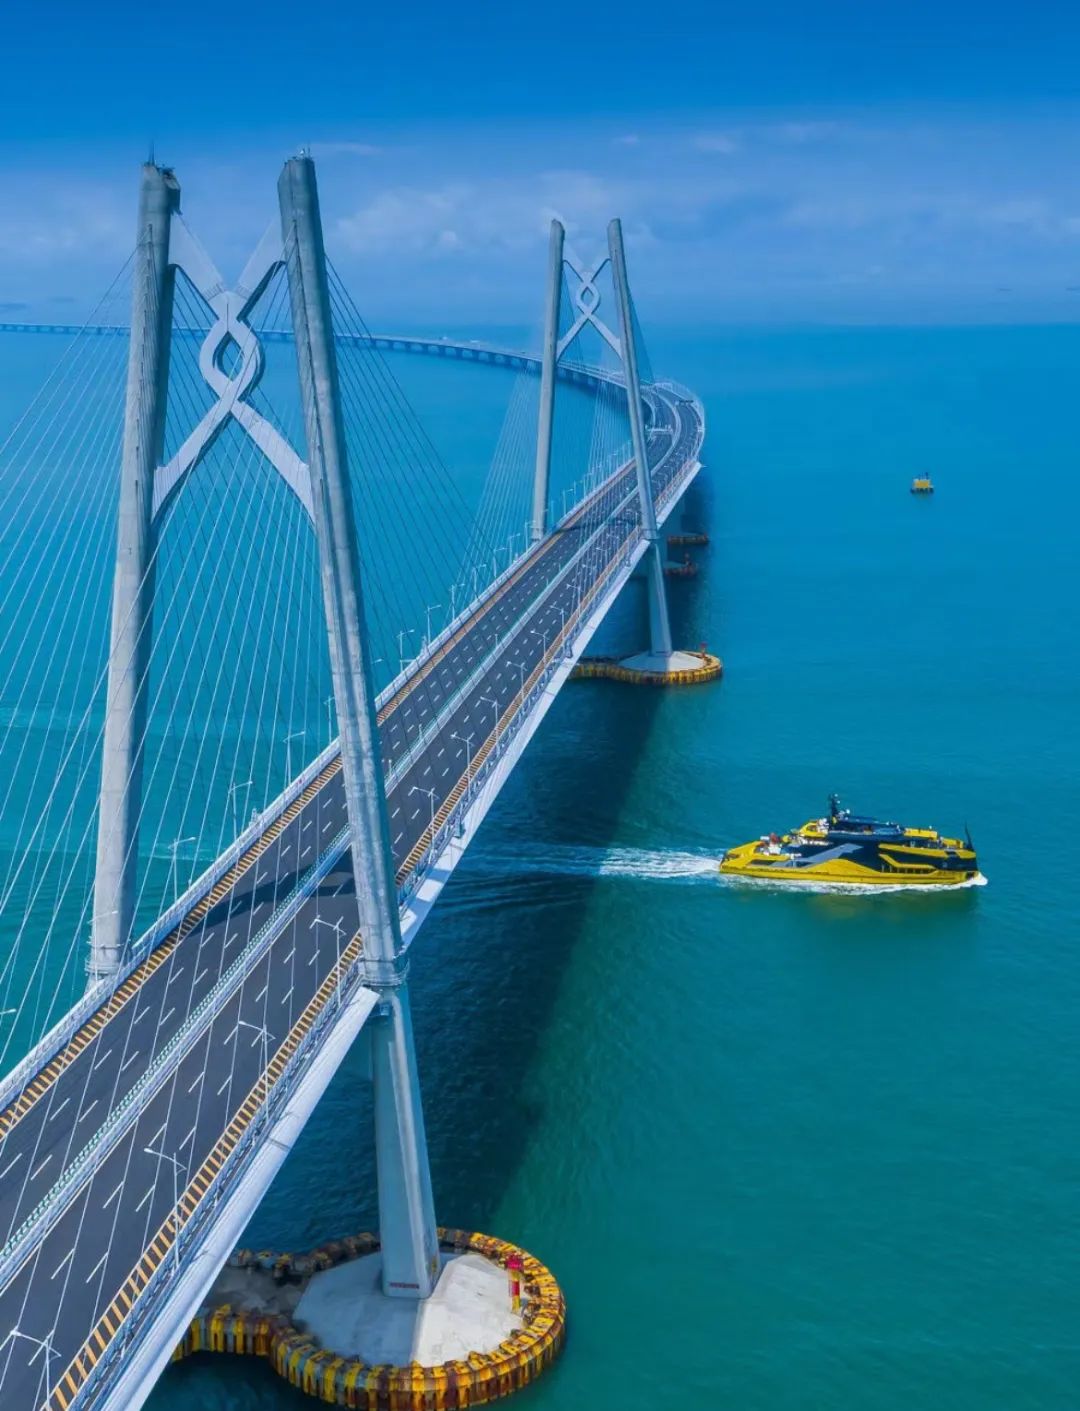 粤港澳大桥全景图图片